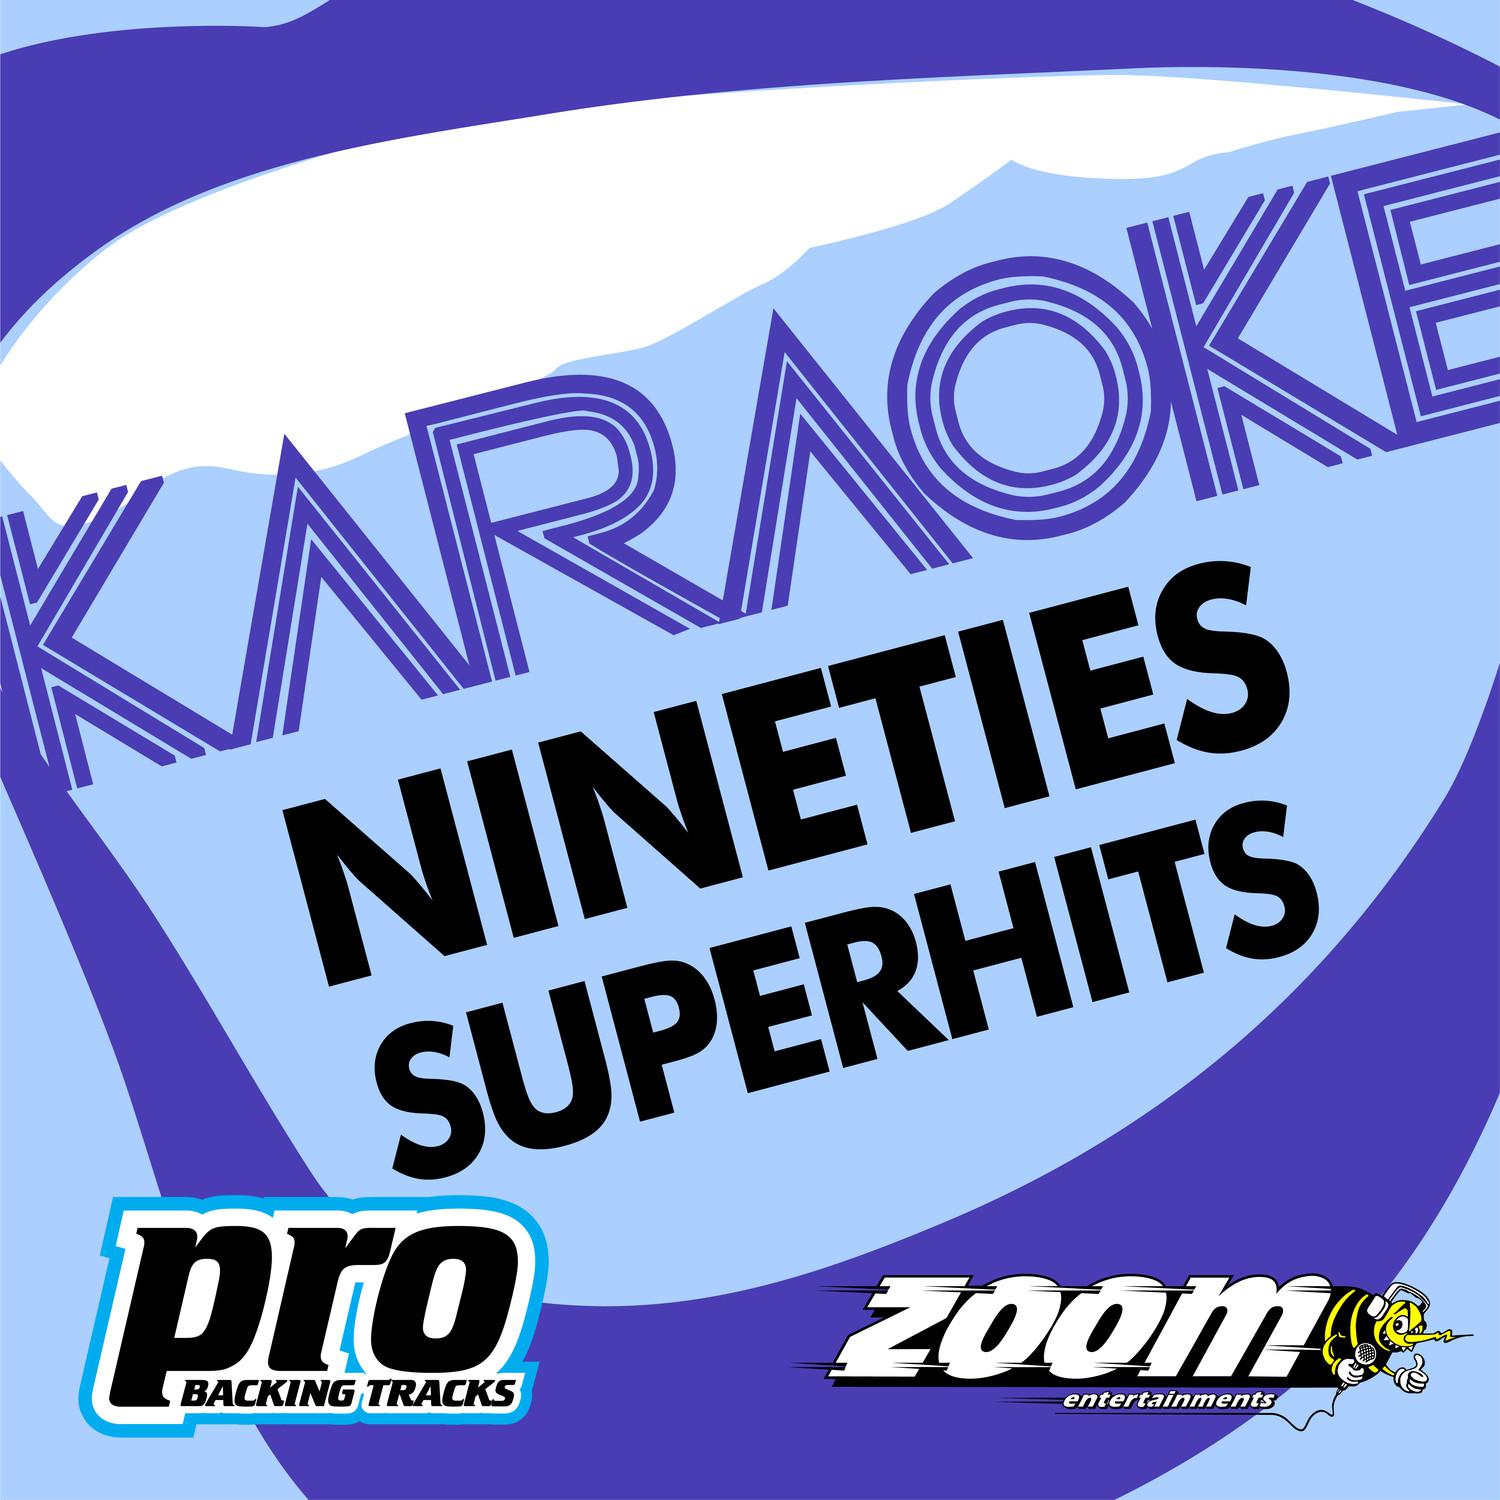 Zoom Karaoke - Nineties Superhits 1